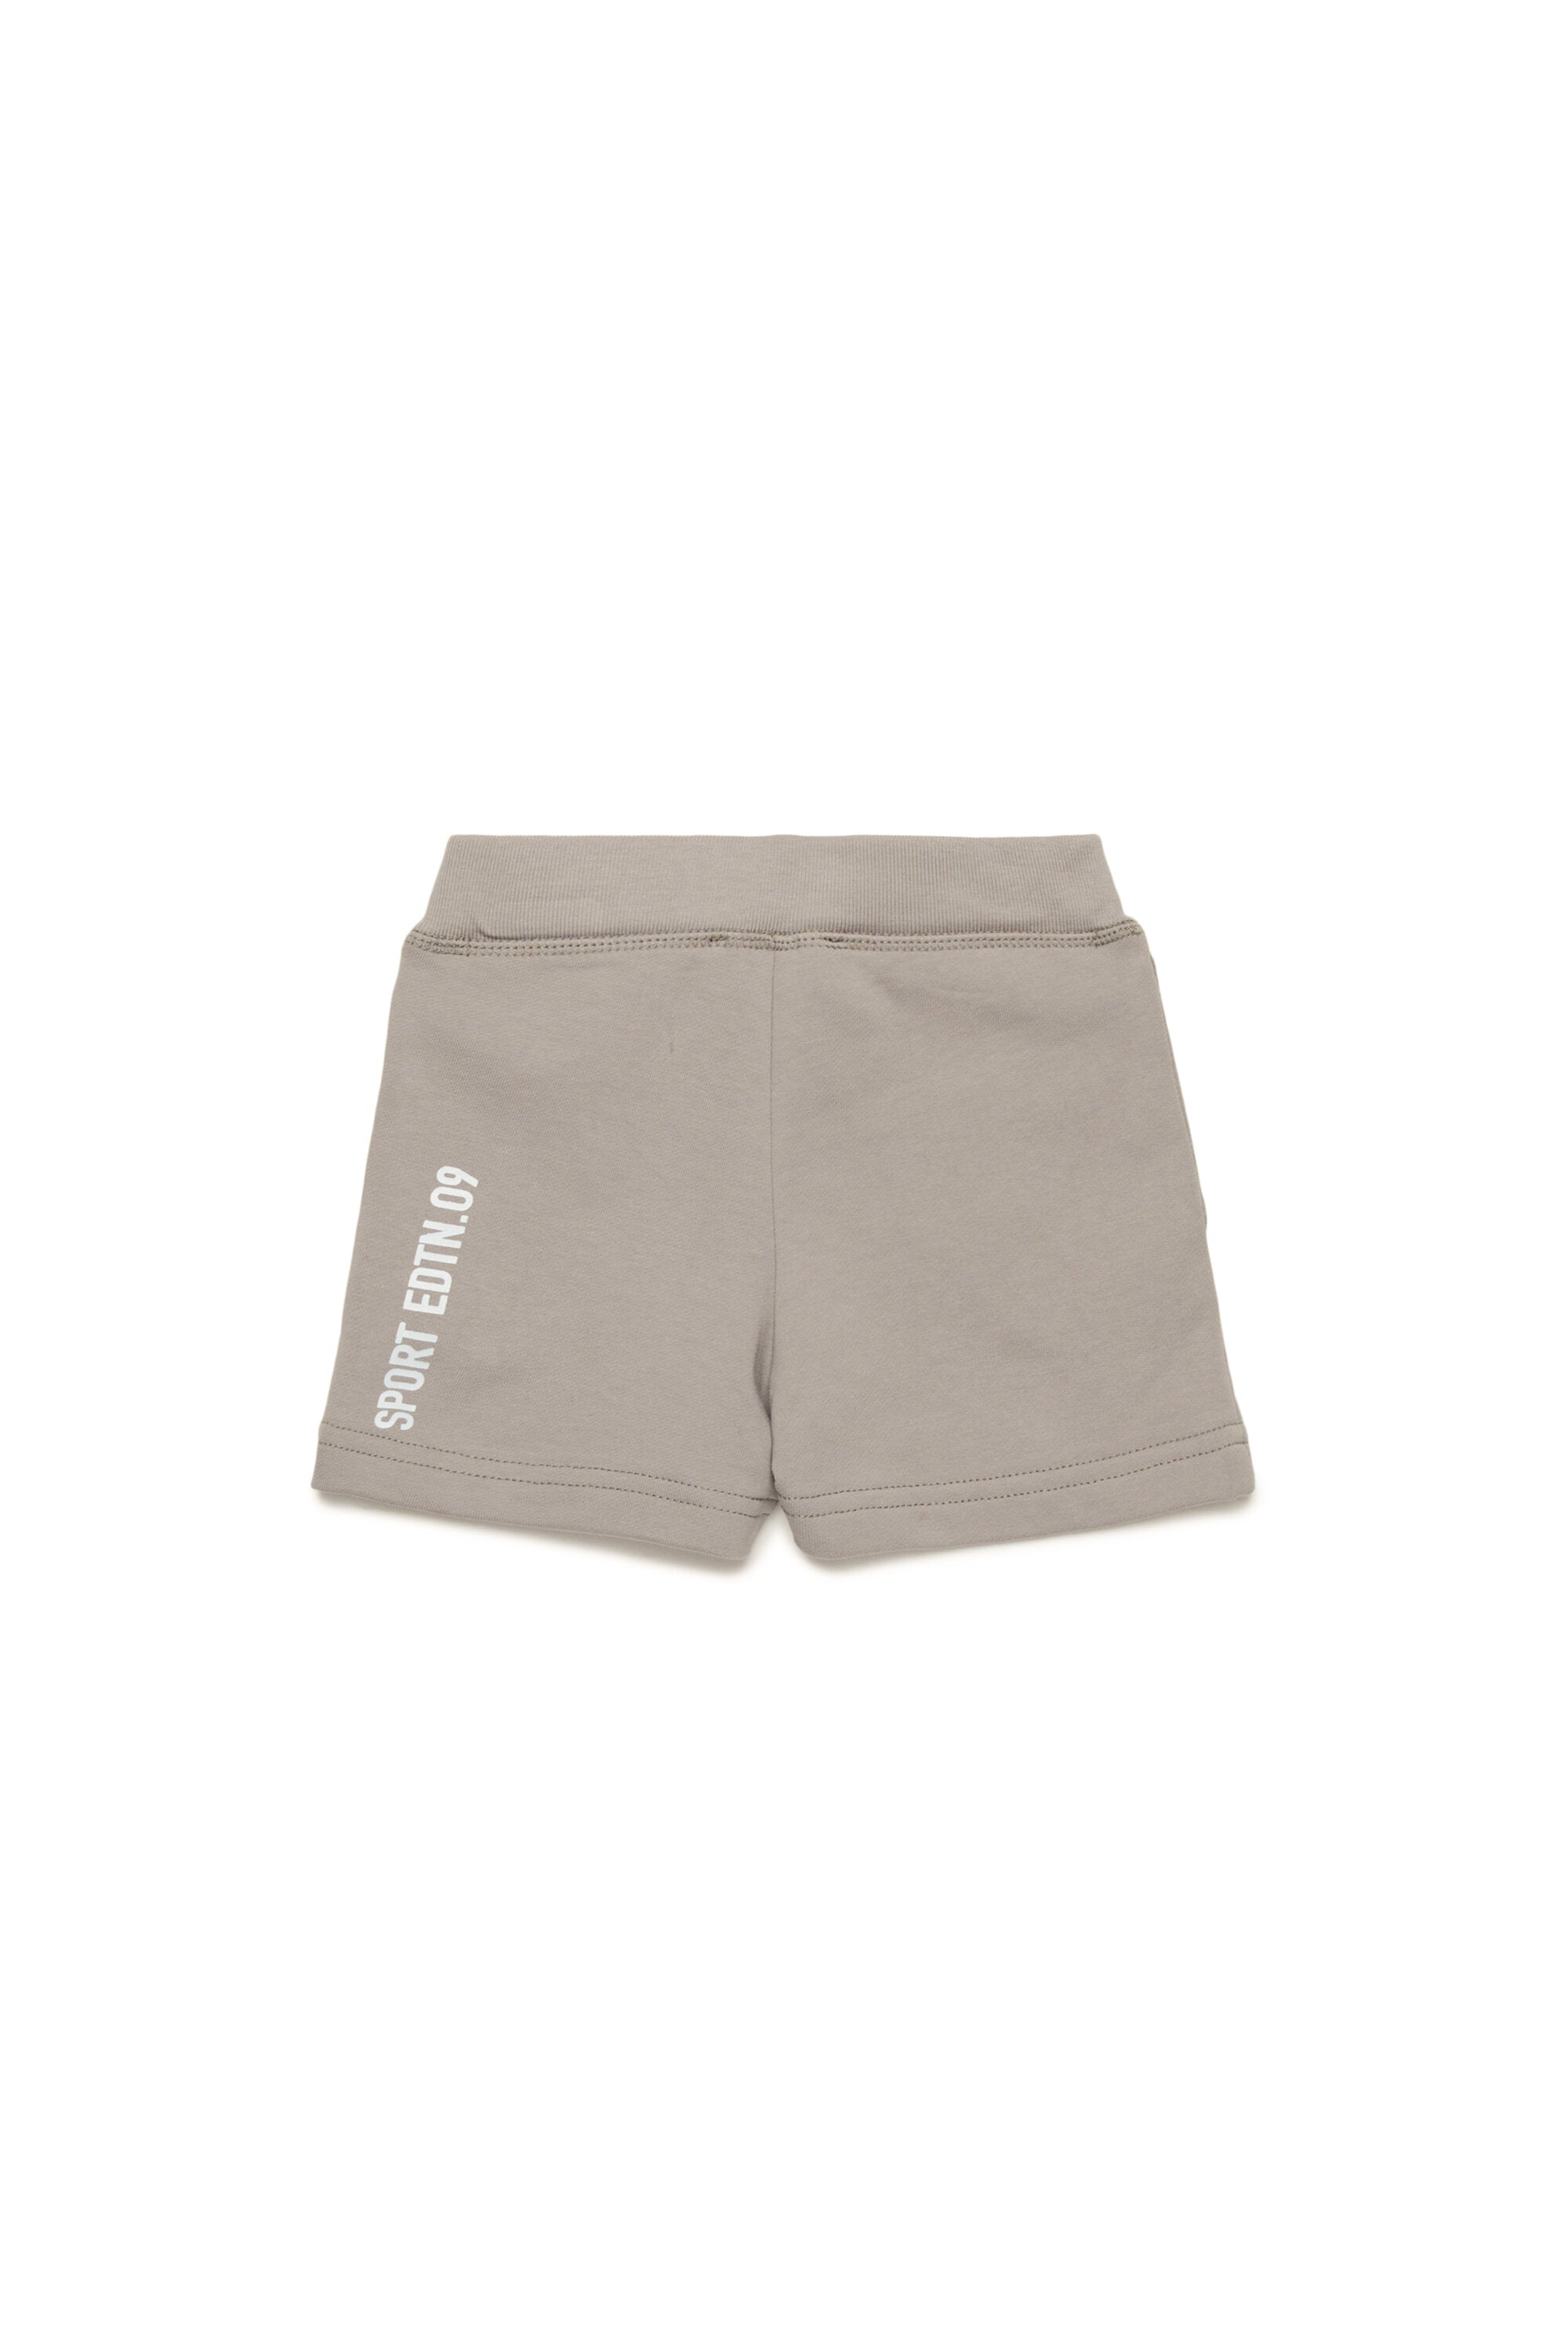 Pantalones cortos en chándal con gráficos Leaf en dos tonos